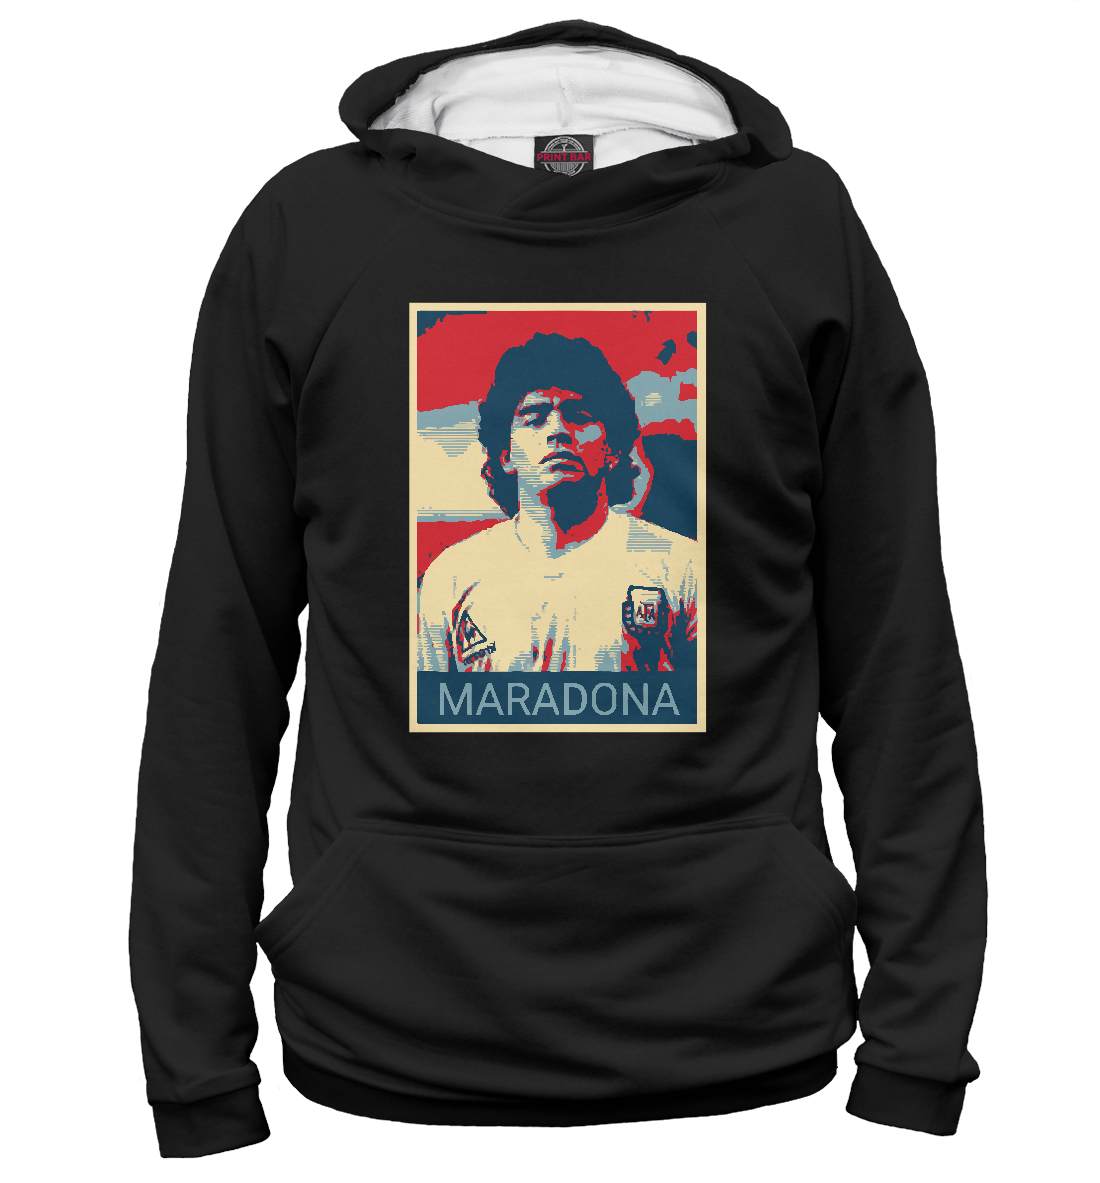 Детский Худи Maradona для мальчиков, артикул FLT-836145-hud-2mp